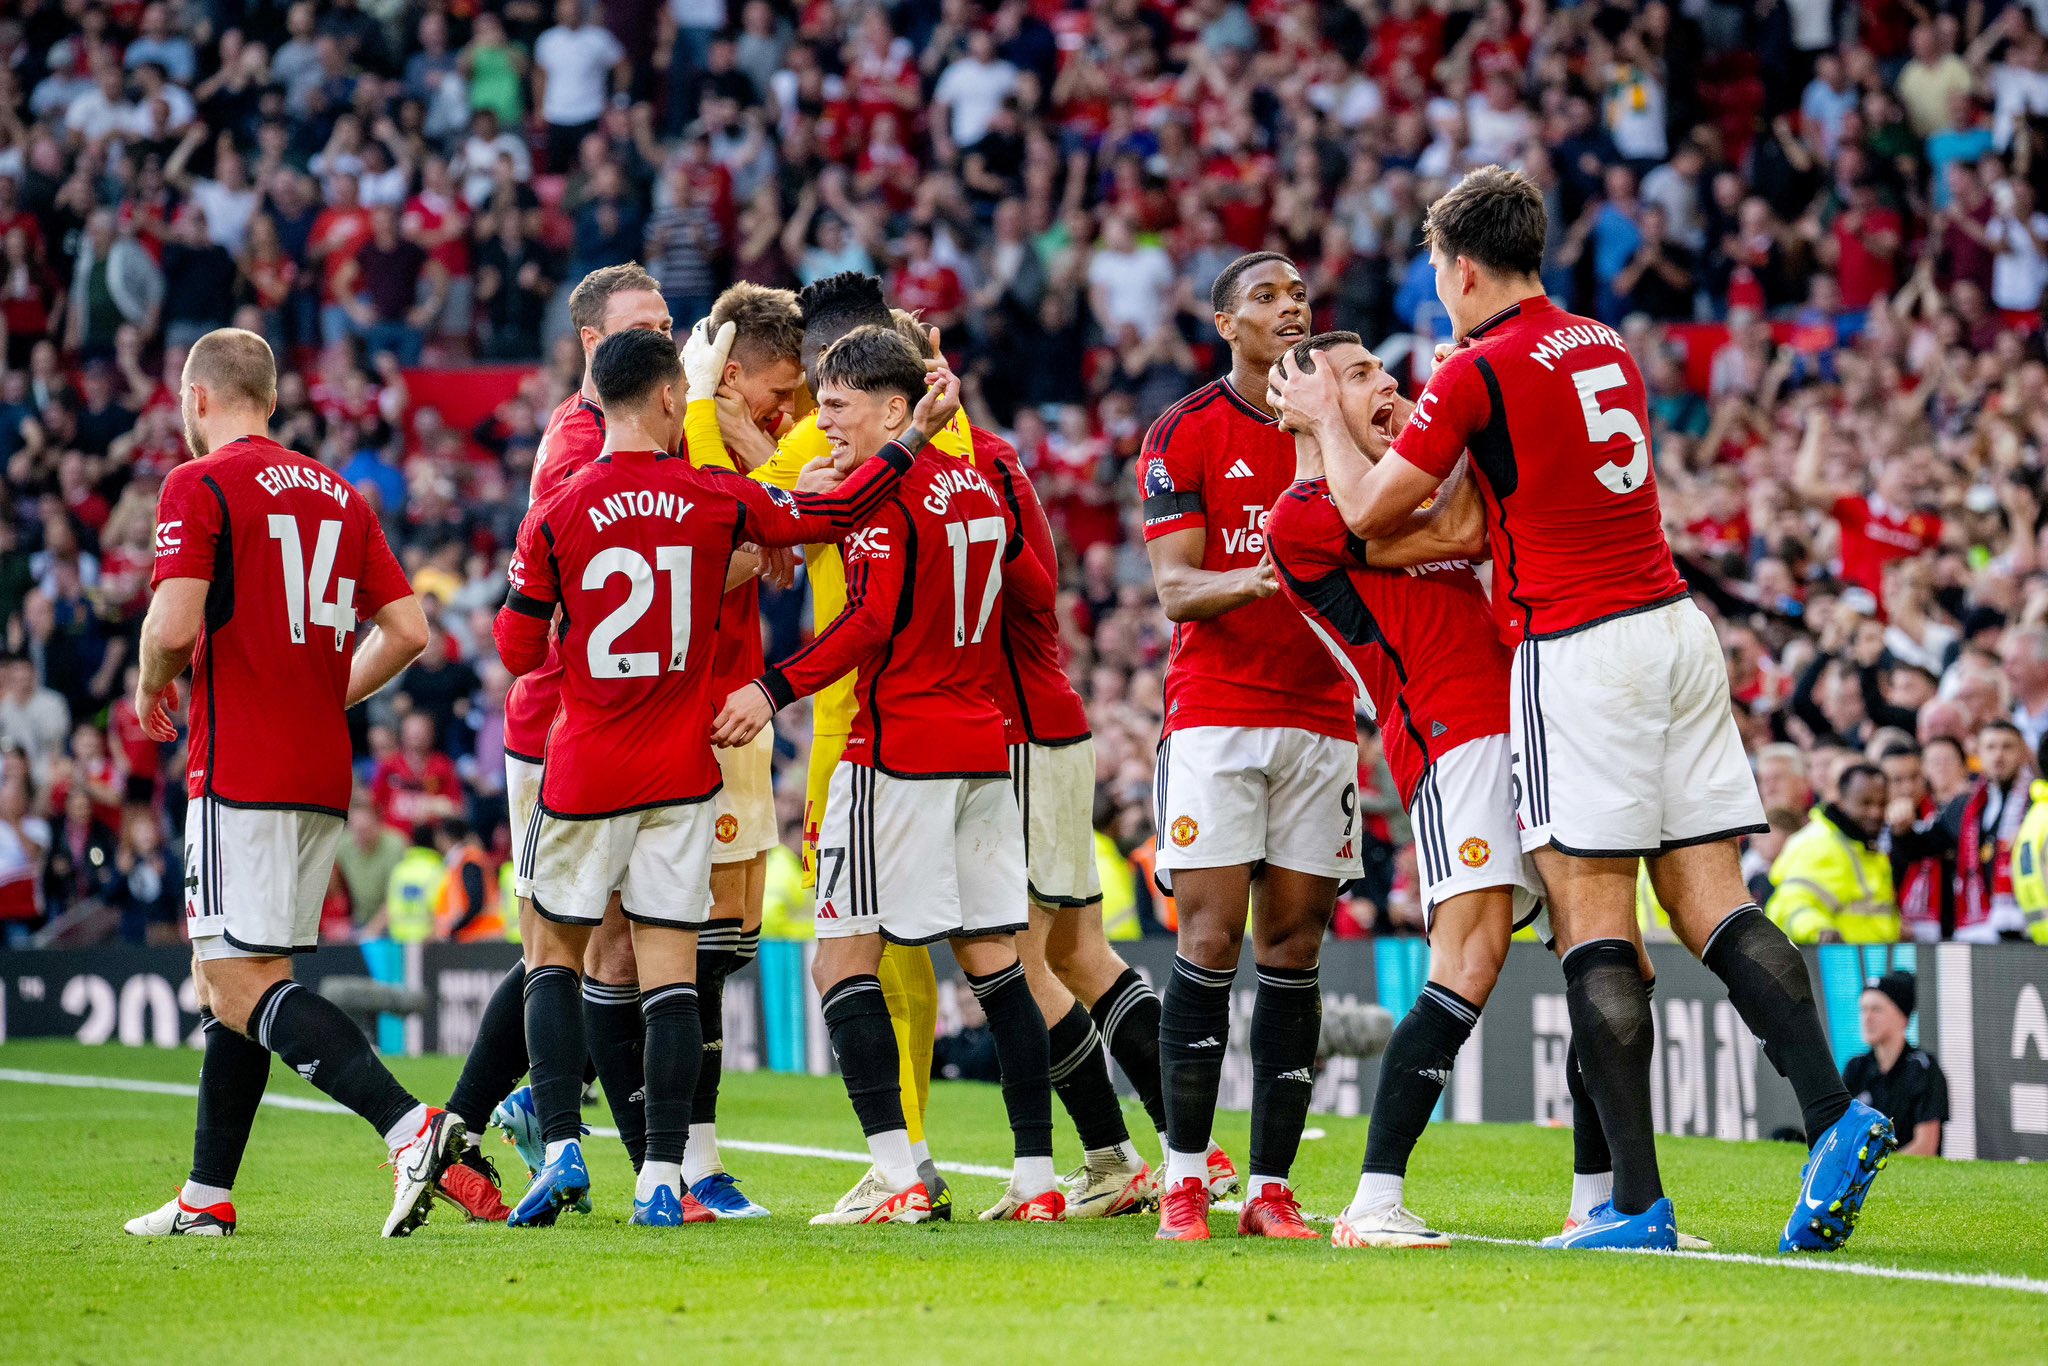 Manchester United : McTominay et Maguire XXL, Onana inquiétant, l’incroyable périple de la journée